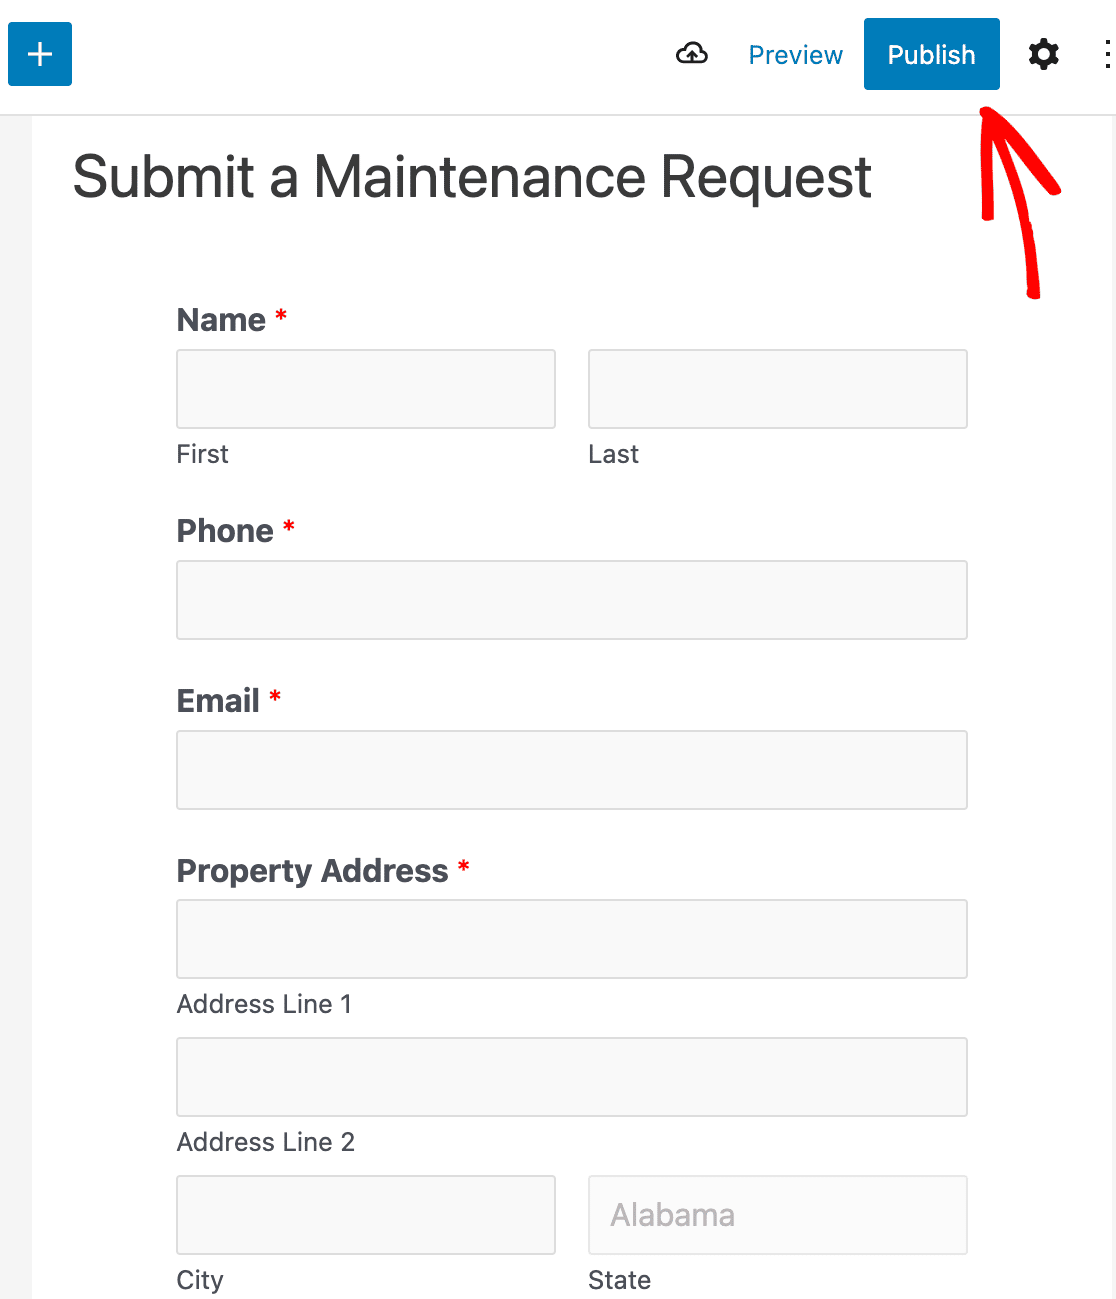 Publishing your maintenance request form